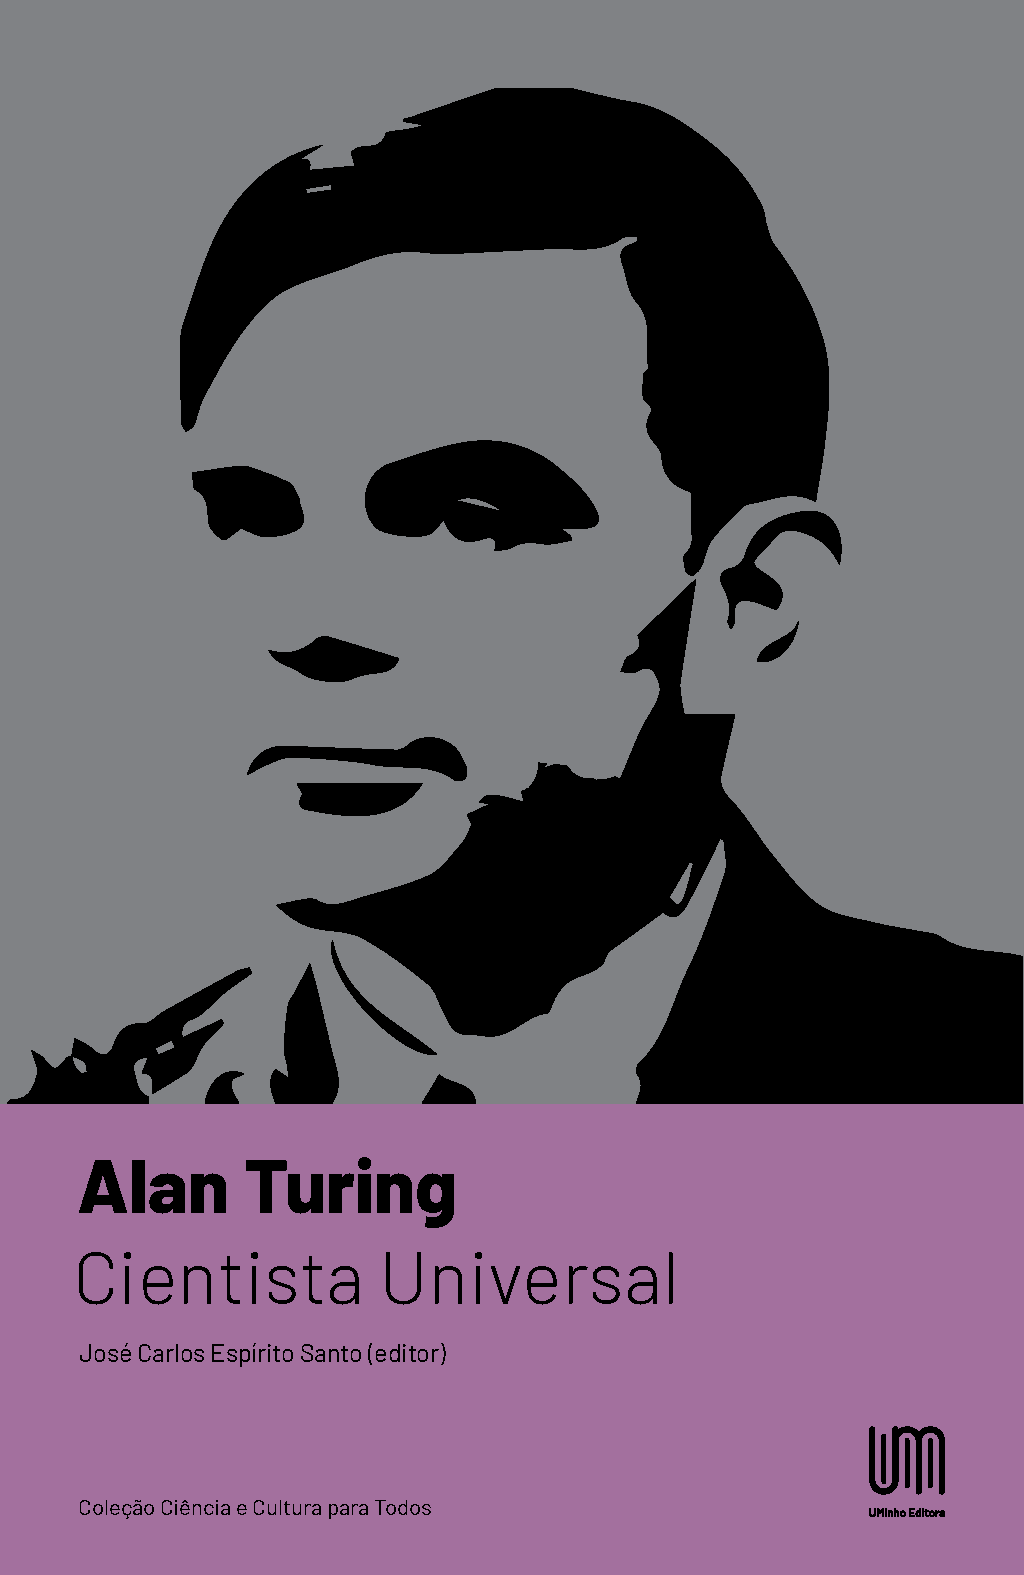 Imagen de portada del libro Alan Turing: cientista universal